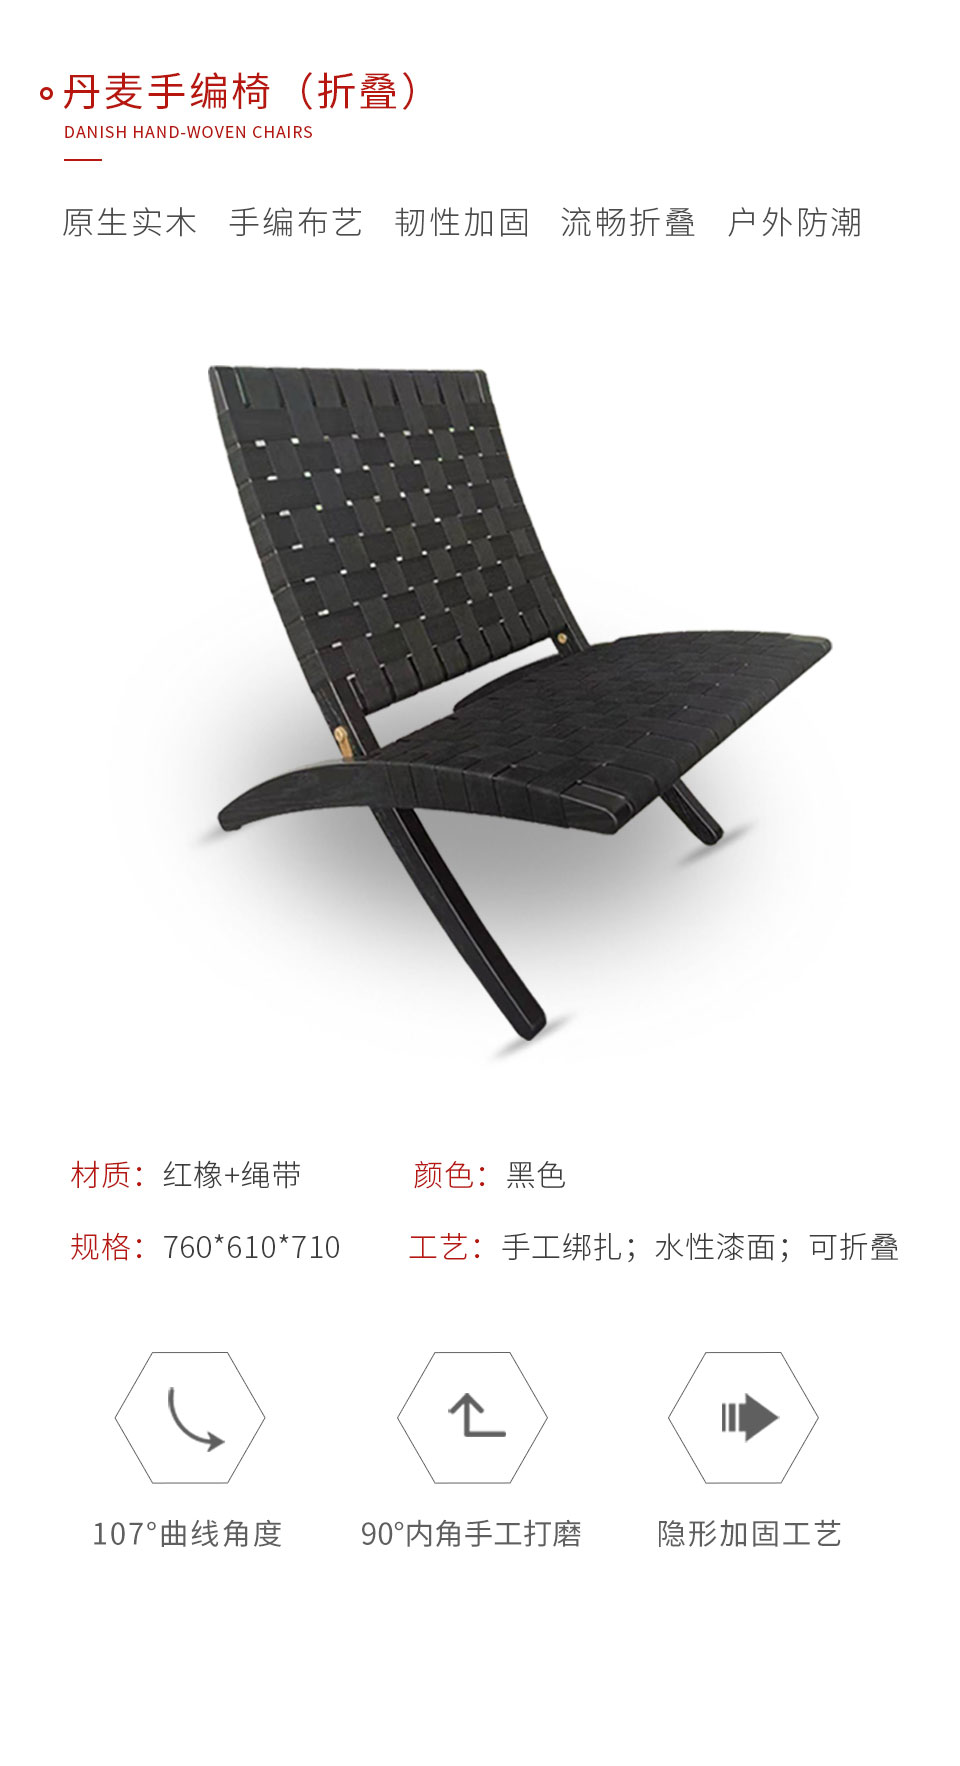 新蒲京娱乐场3245定制丹麦折叠手编椅